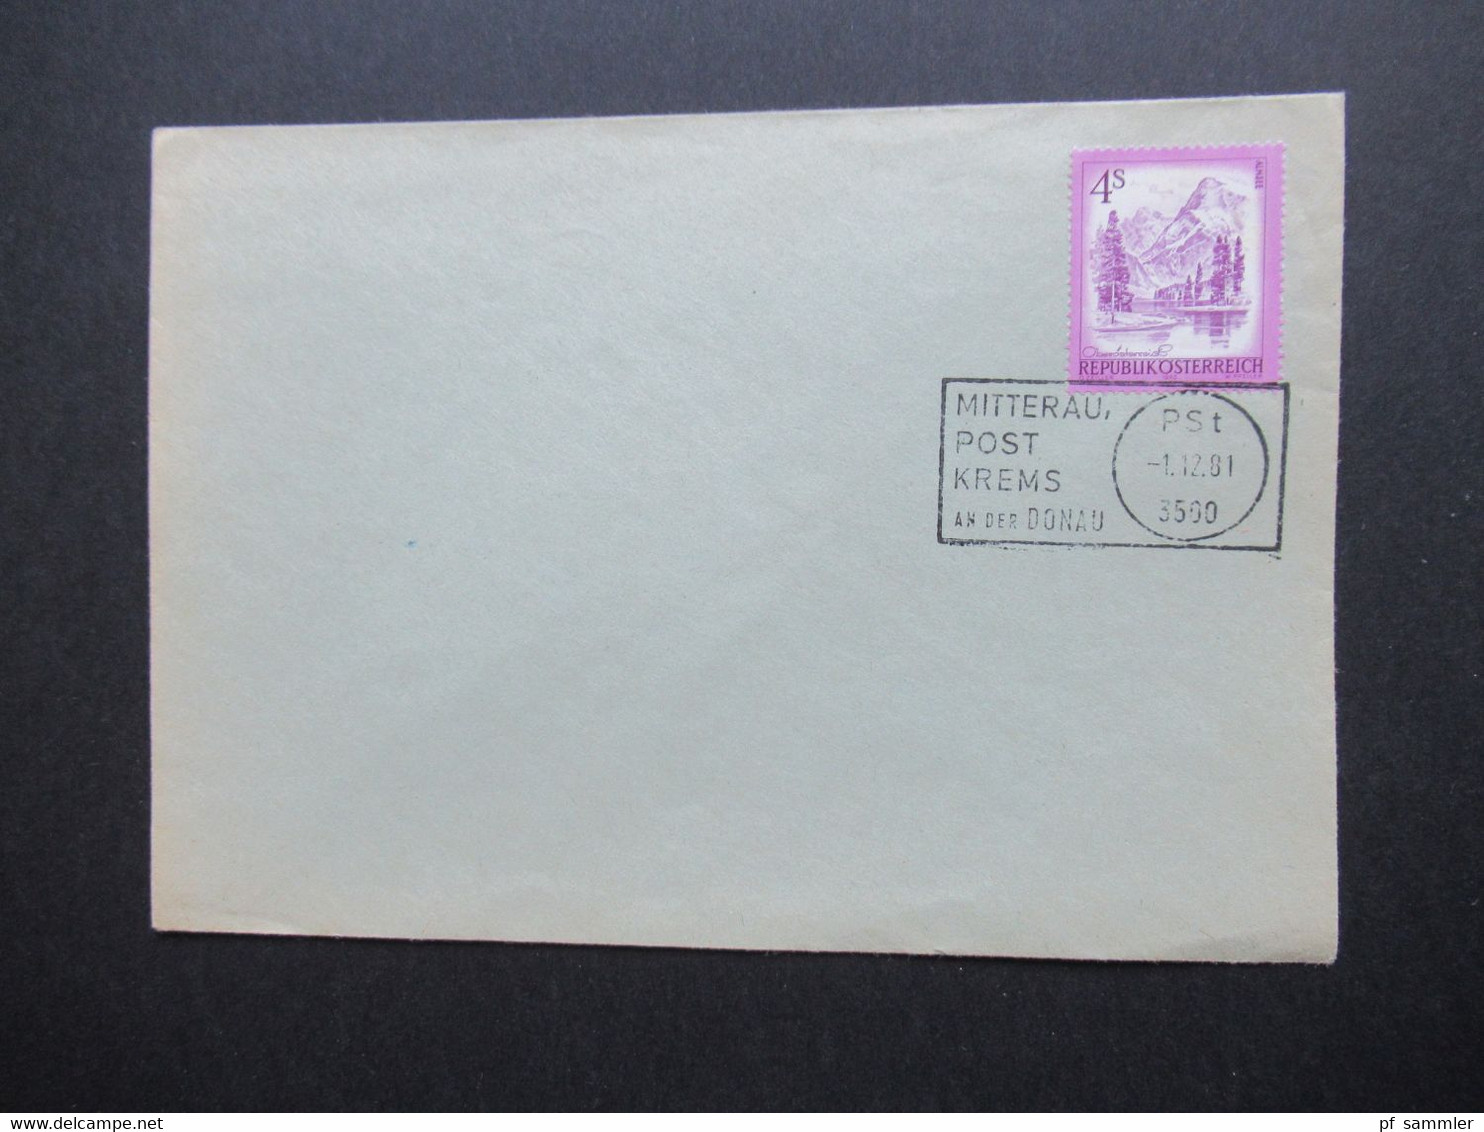 Österreich 1981 Umschlag Mit Stempel Mitterau Post Krems An Der Donau PSt 1.12.81 3500 - Briefe U. Dokumente